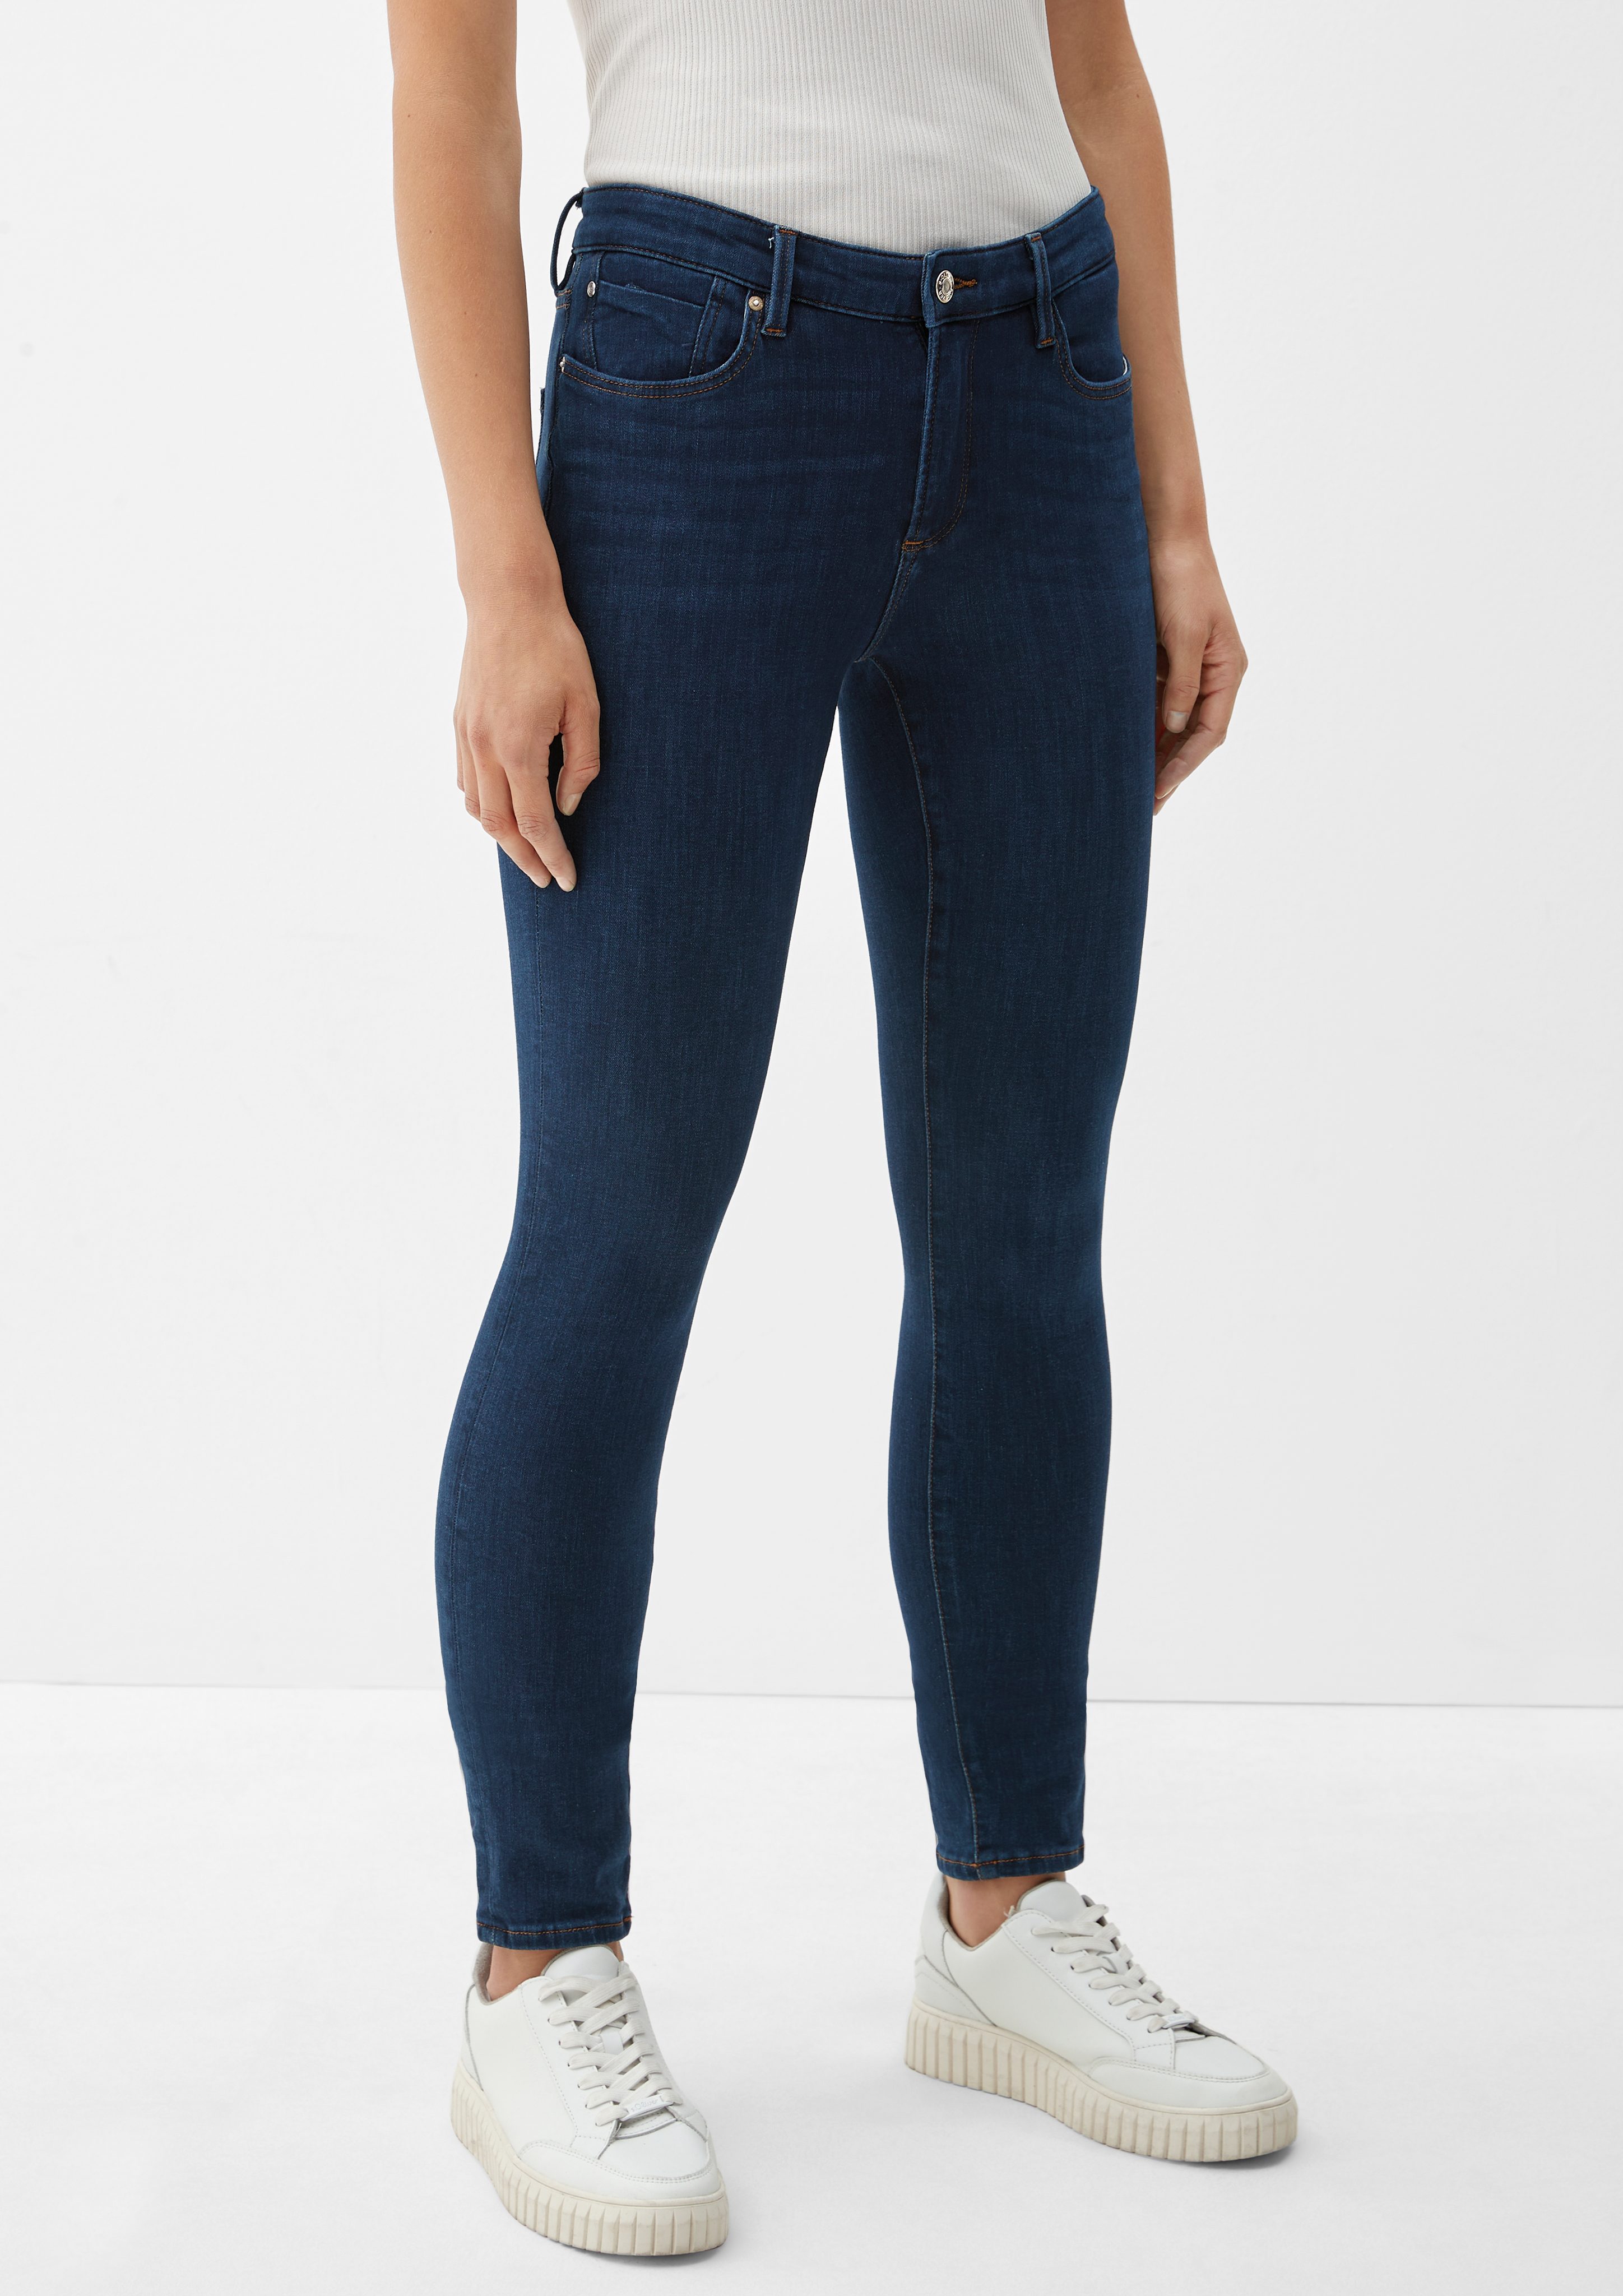 s.Oliver 5-Pocket-Jeans Jeans Izabell dark / / Label-Patch blue Mid / Skinny Fit Rise Leg Skinny